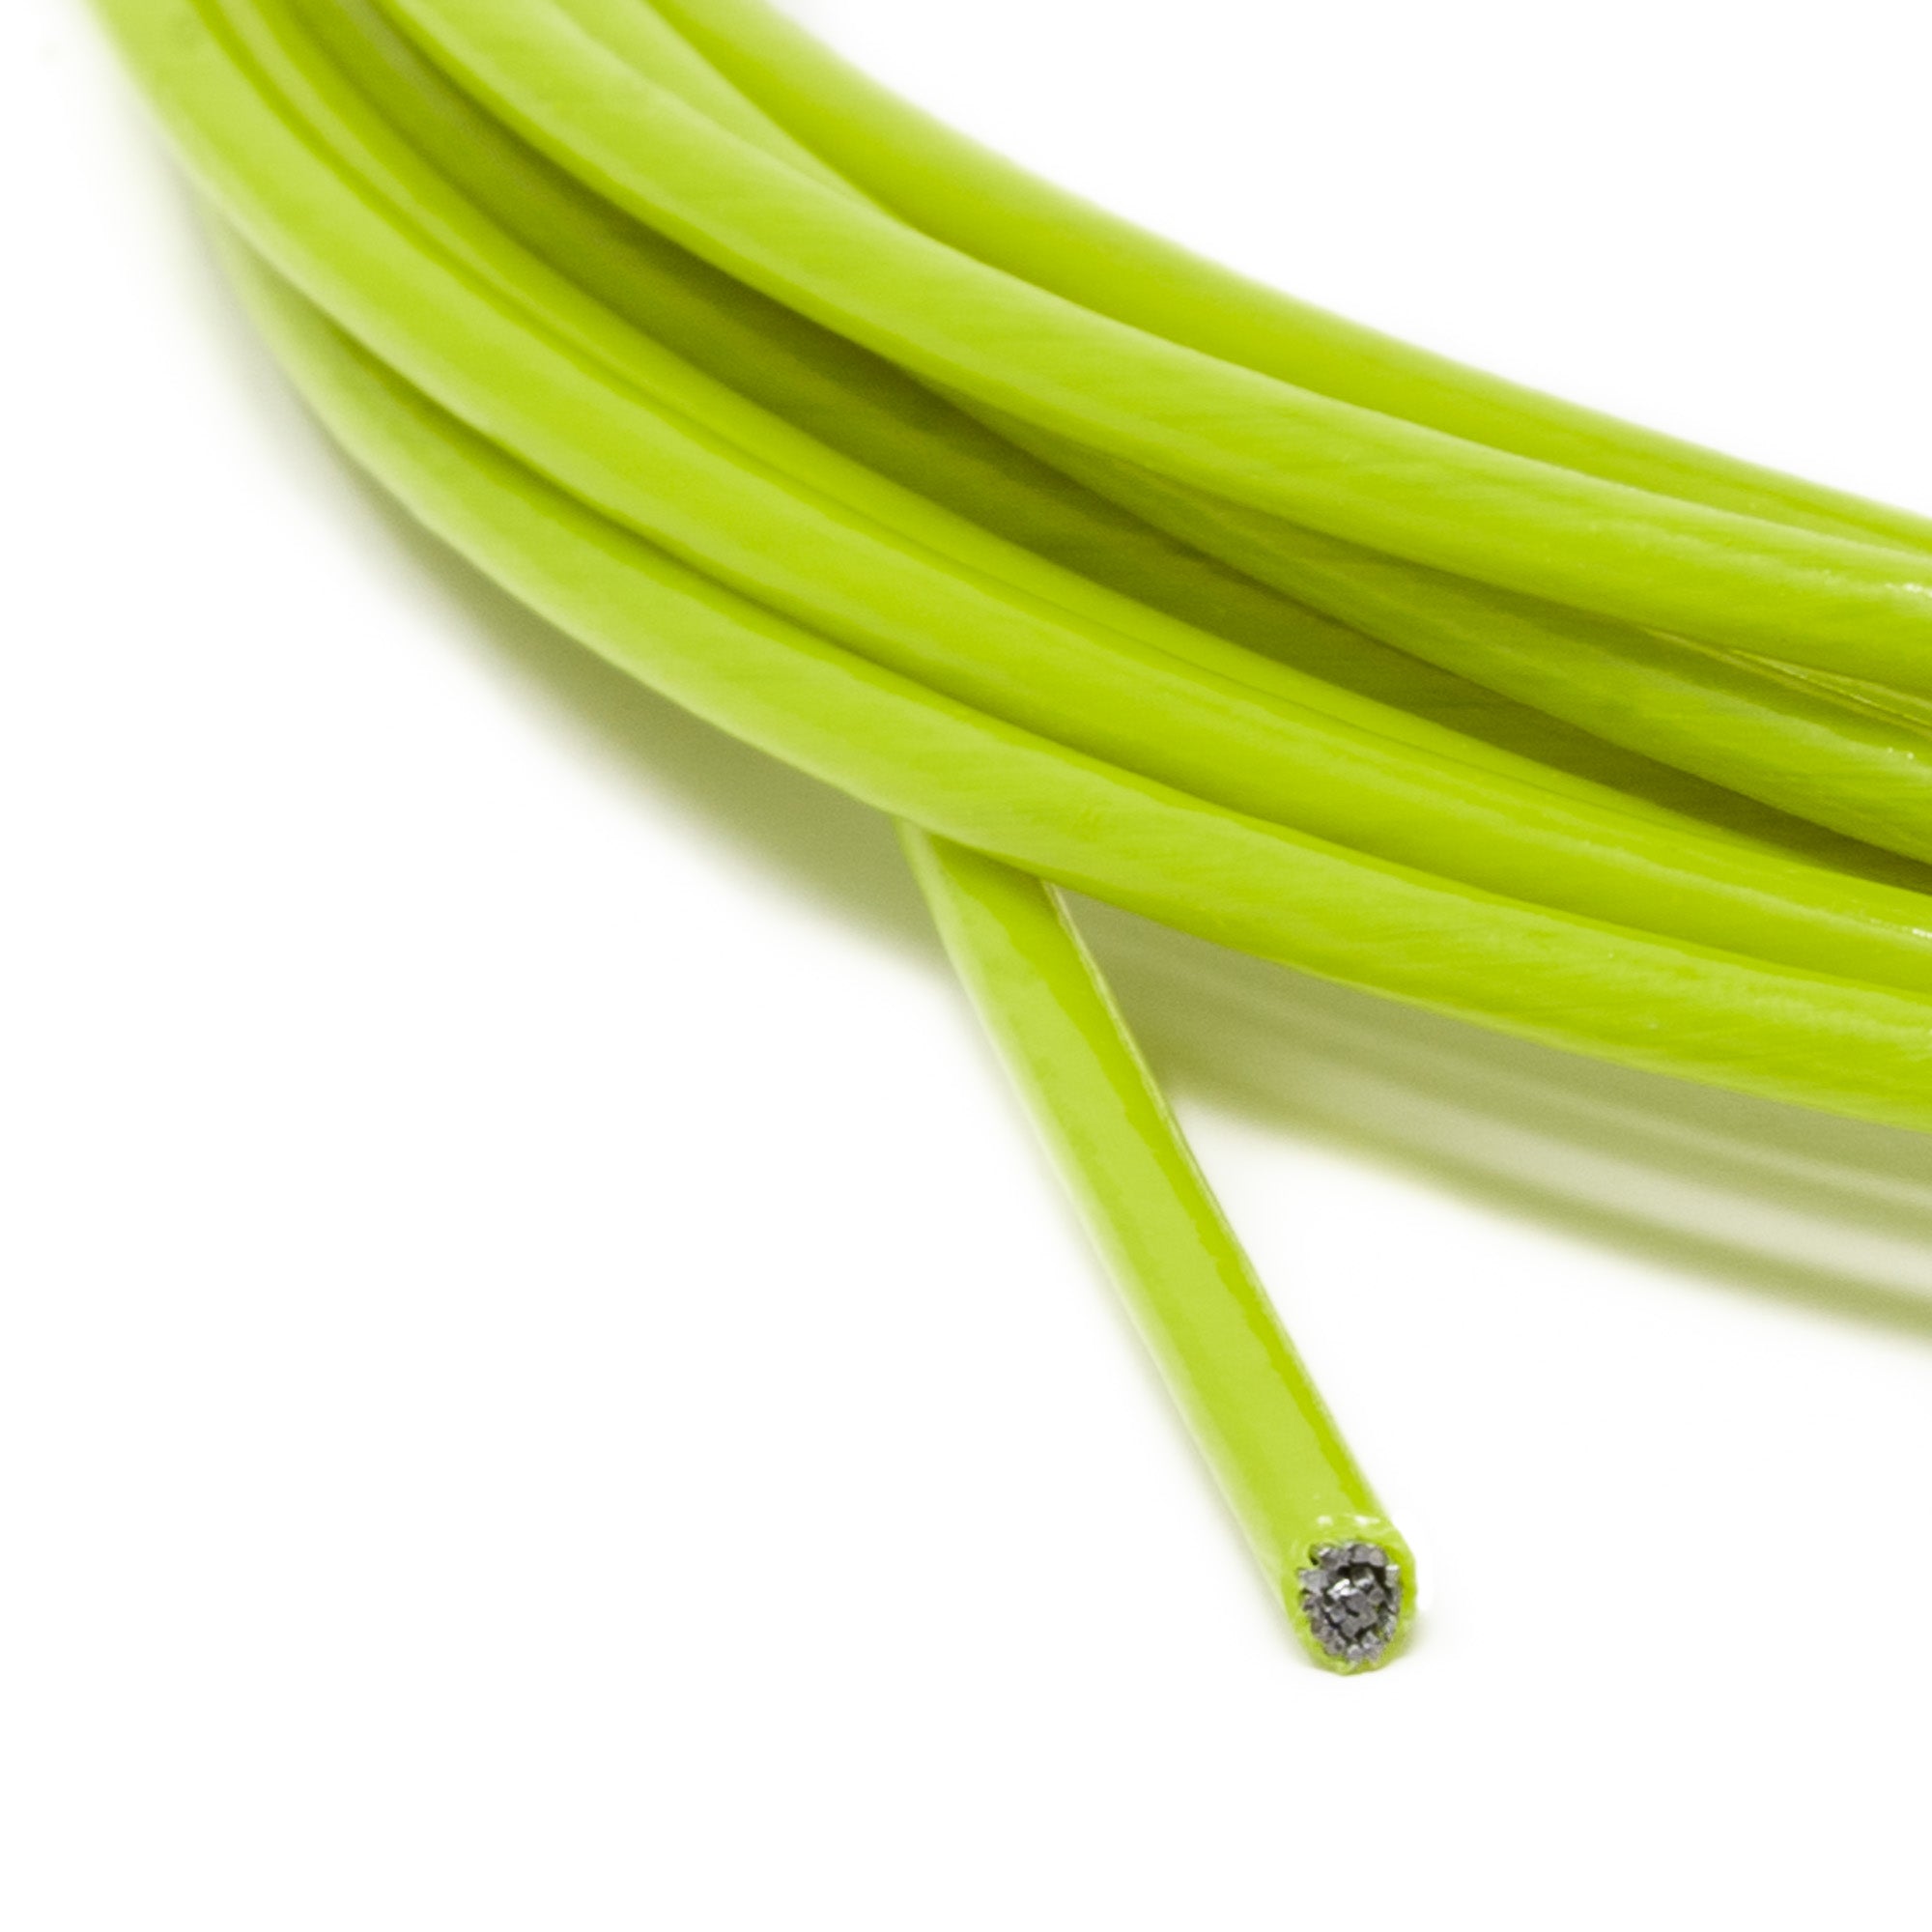 Velites I Cable de Repuesto para Comba de Saltar de Crosstraining, Fitness  y Boxeo, PVC Plata y Acero de 1,8 mm